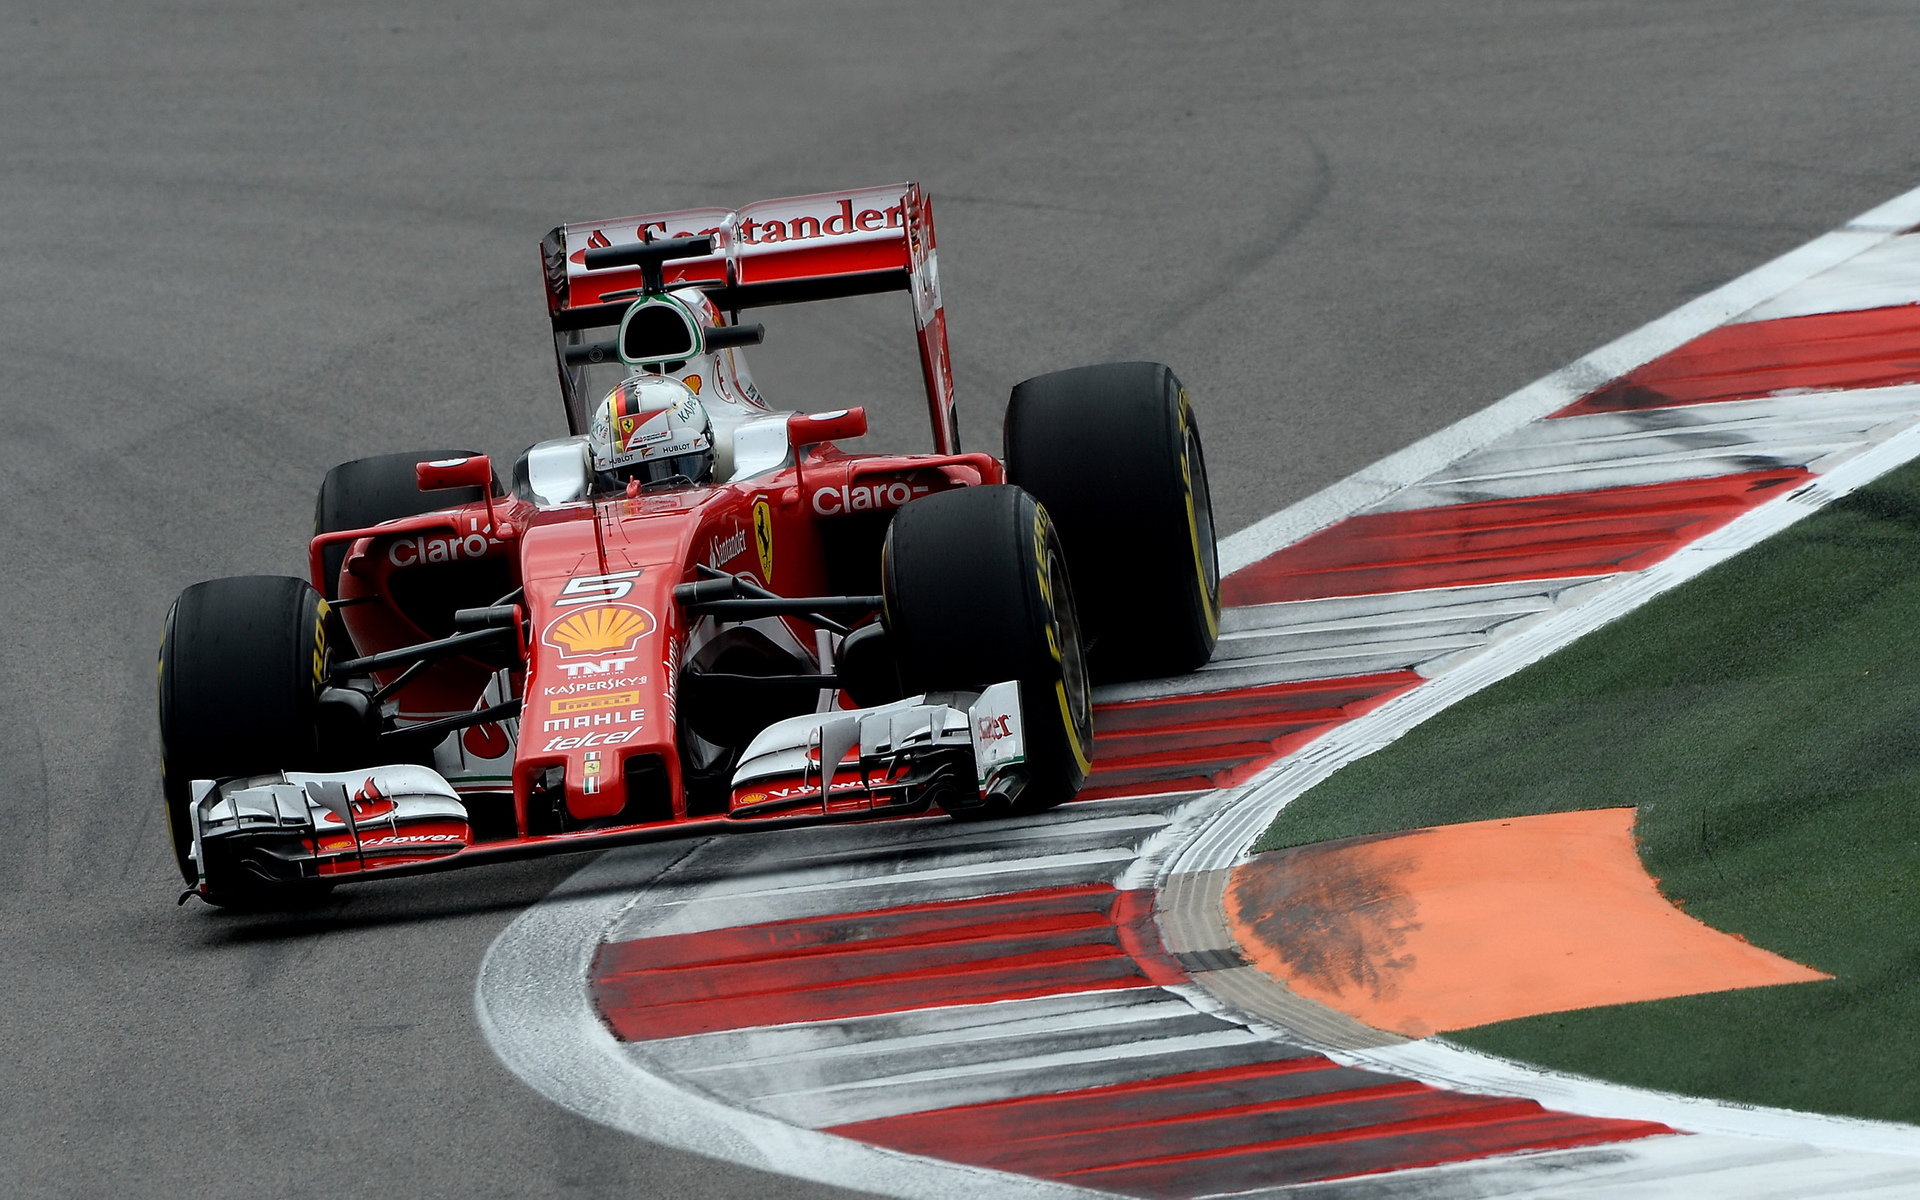 Vettel sice skončil třetí, ale se značným odstupem za Mercedesy